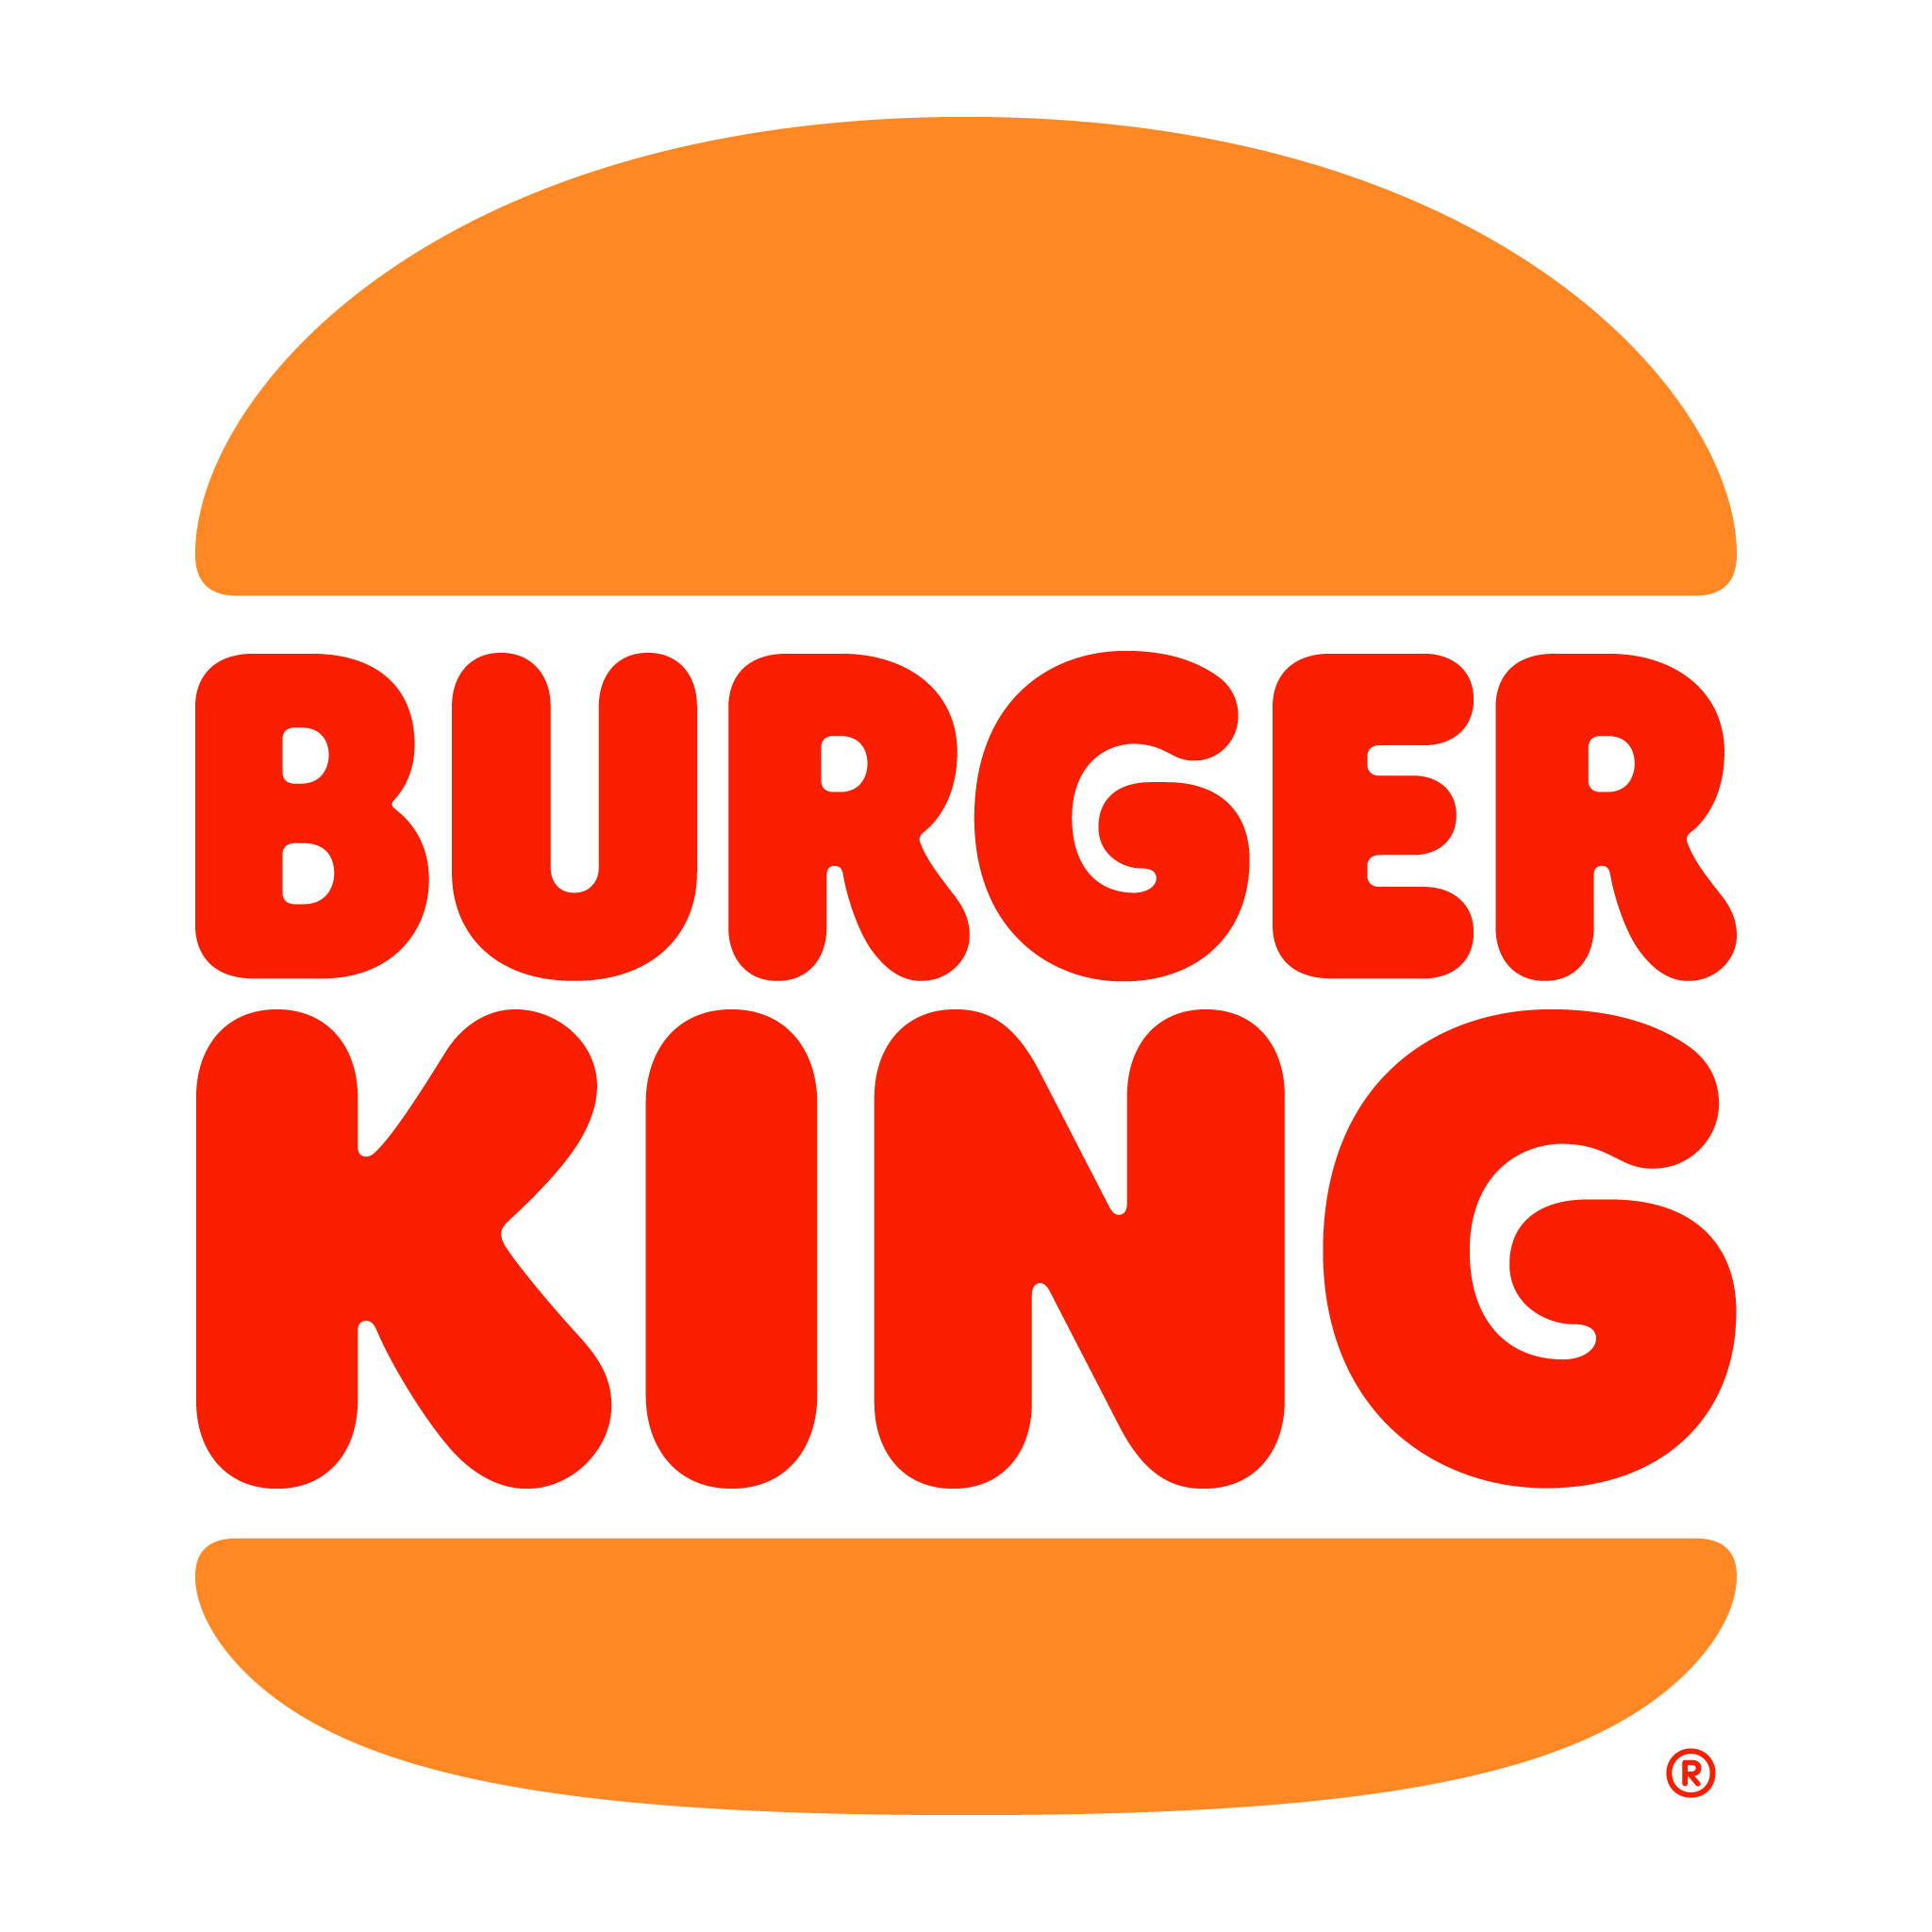 brasao do burger king 2021